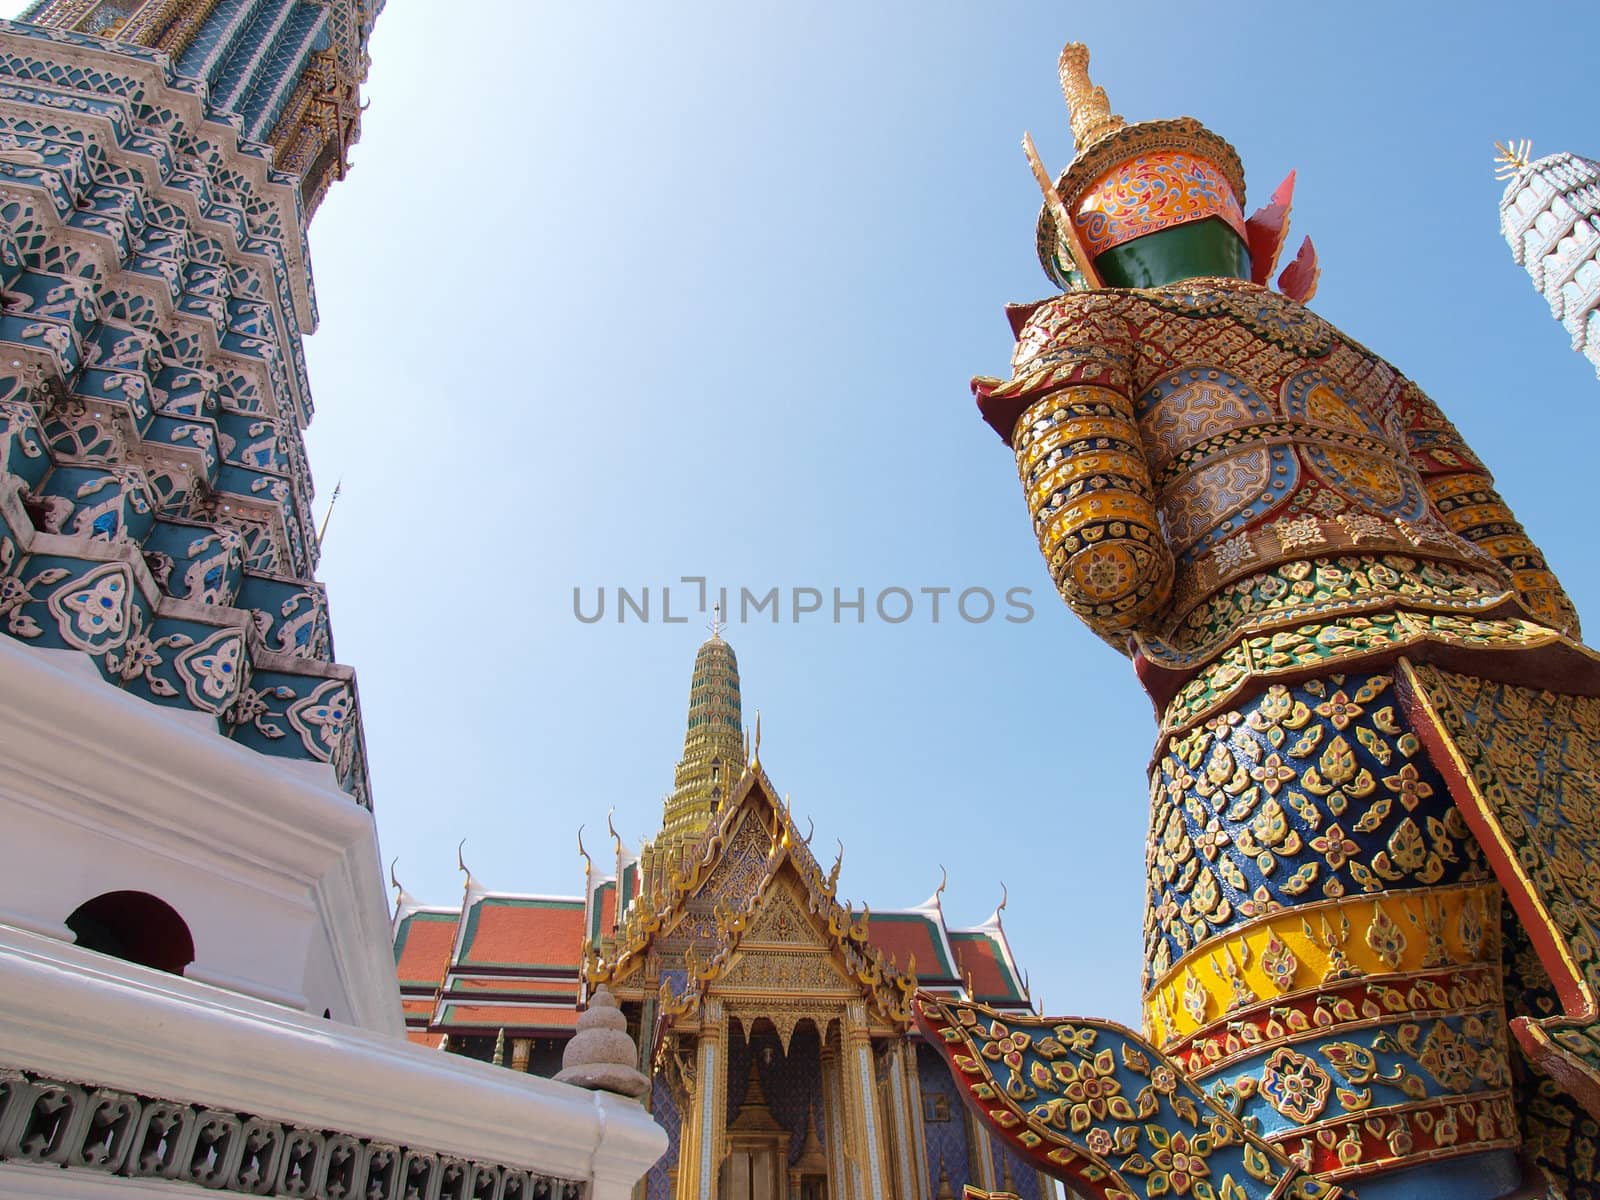 The Grand Palace ,Bangkok Thailand